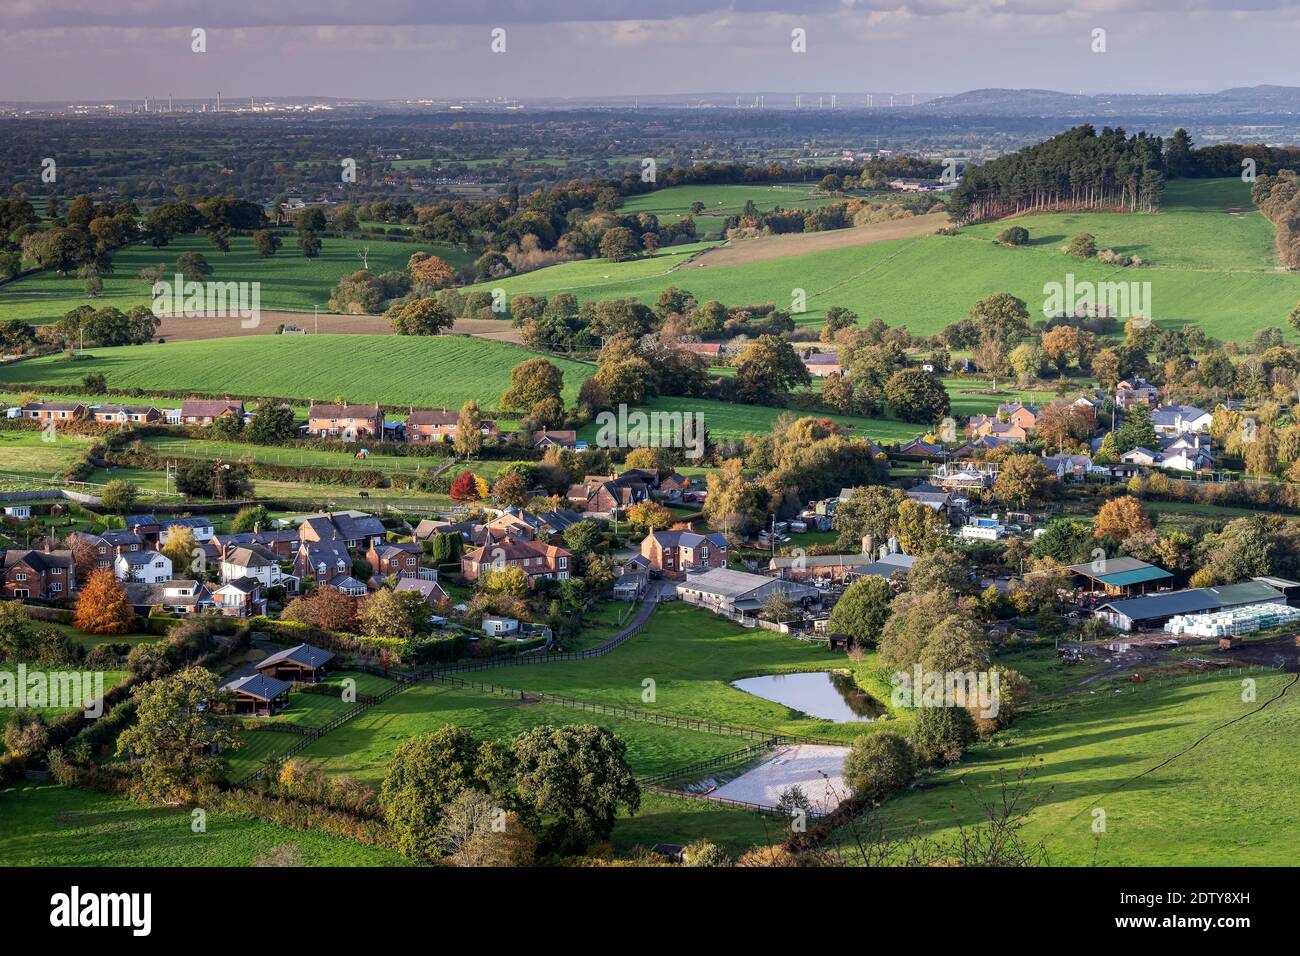 Das Dorf Brown knowl, die Ebene von Ceshire und die Ölraffinerie Stanlow, von Bickerton Hill, Ceshire, England, Großbritannien Stockfoto